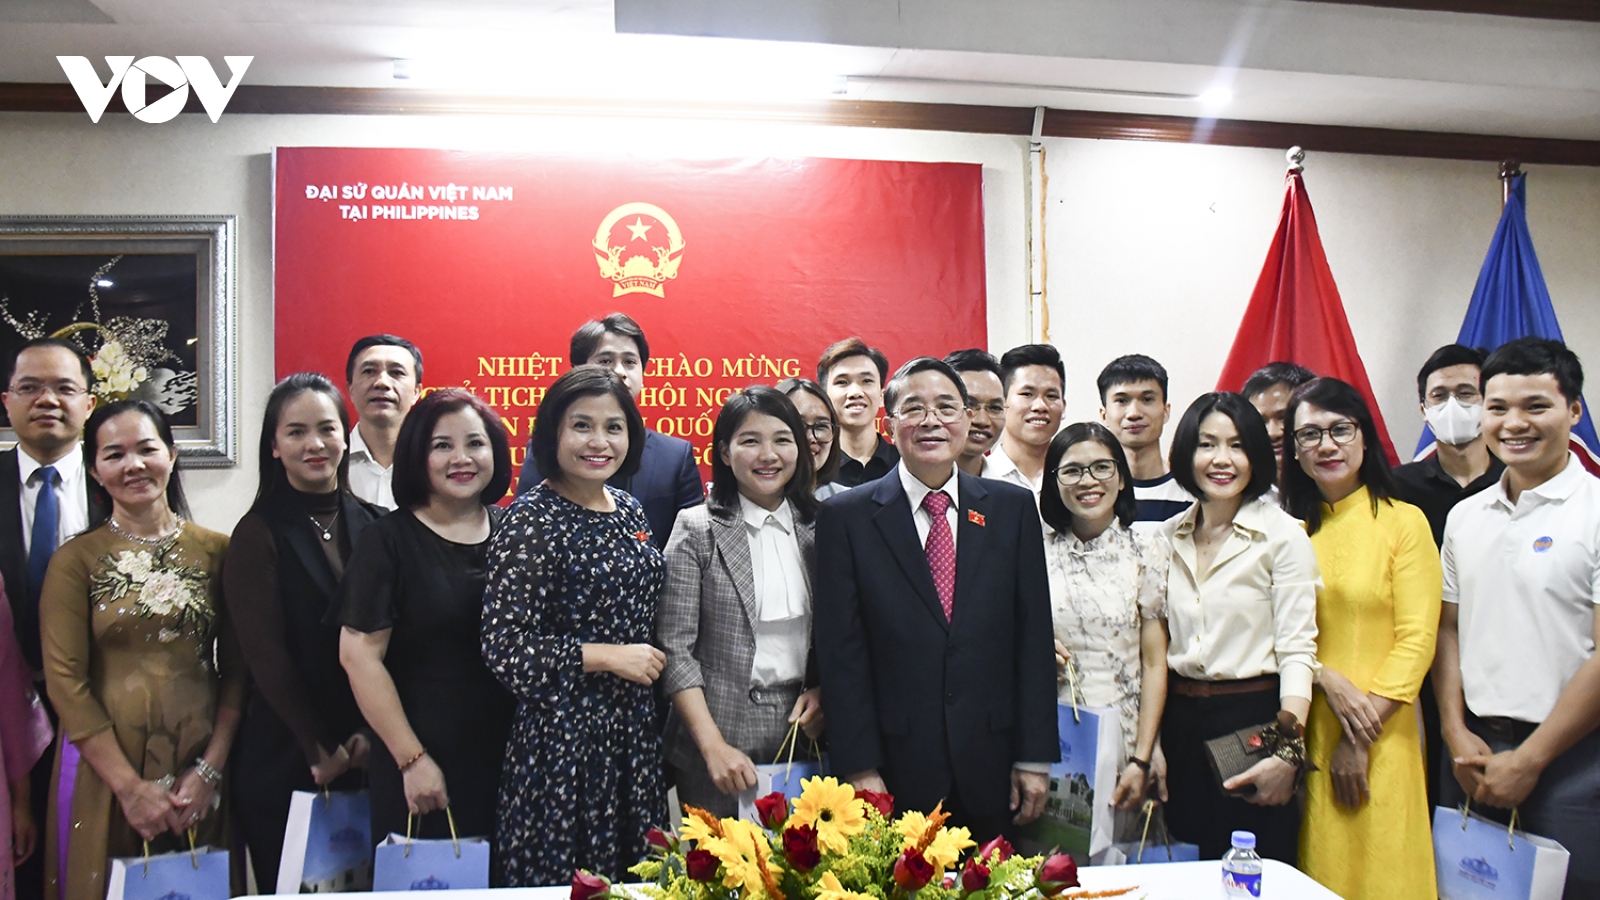 Phó Chủ tịch Quốc hội gặp Đại sứ quán và cộng đồng người Việt tại Philippines